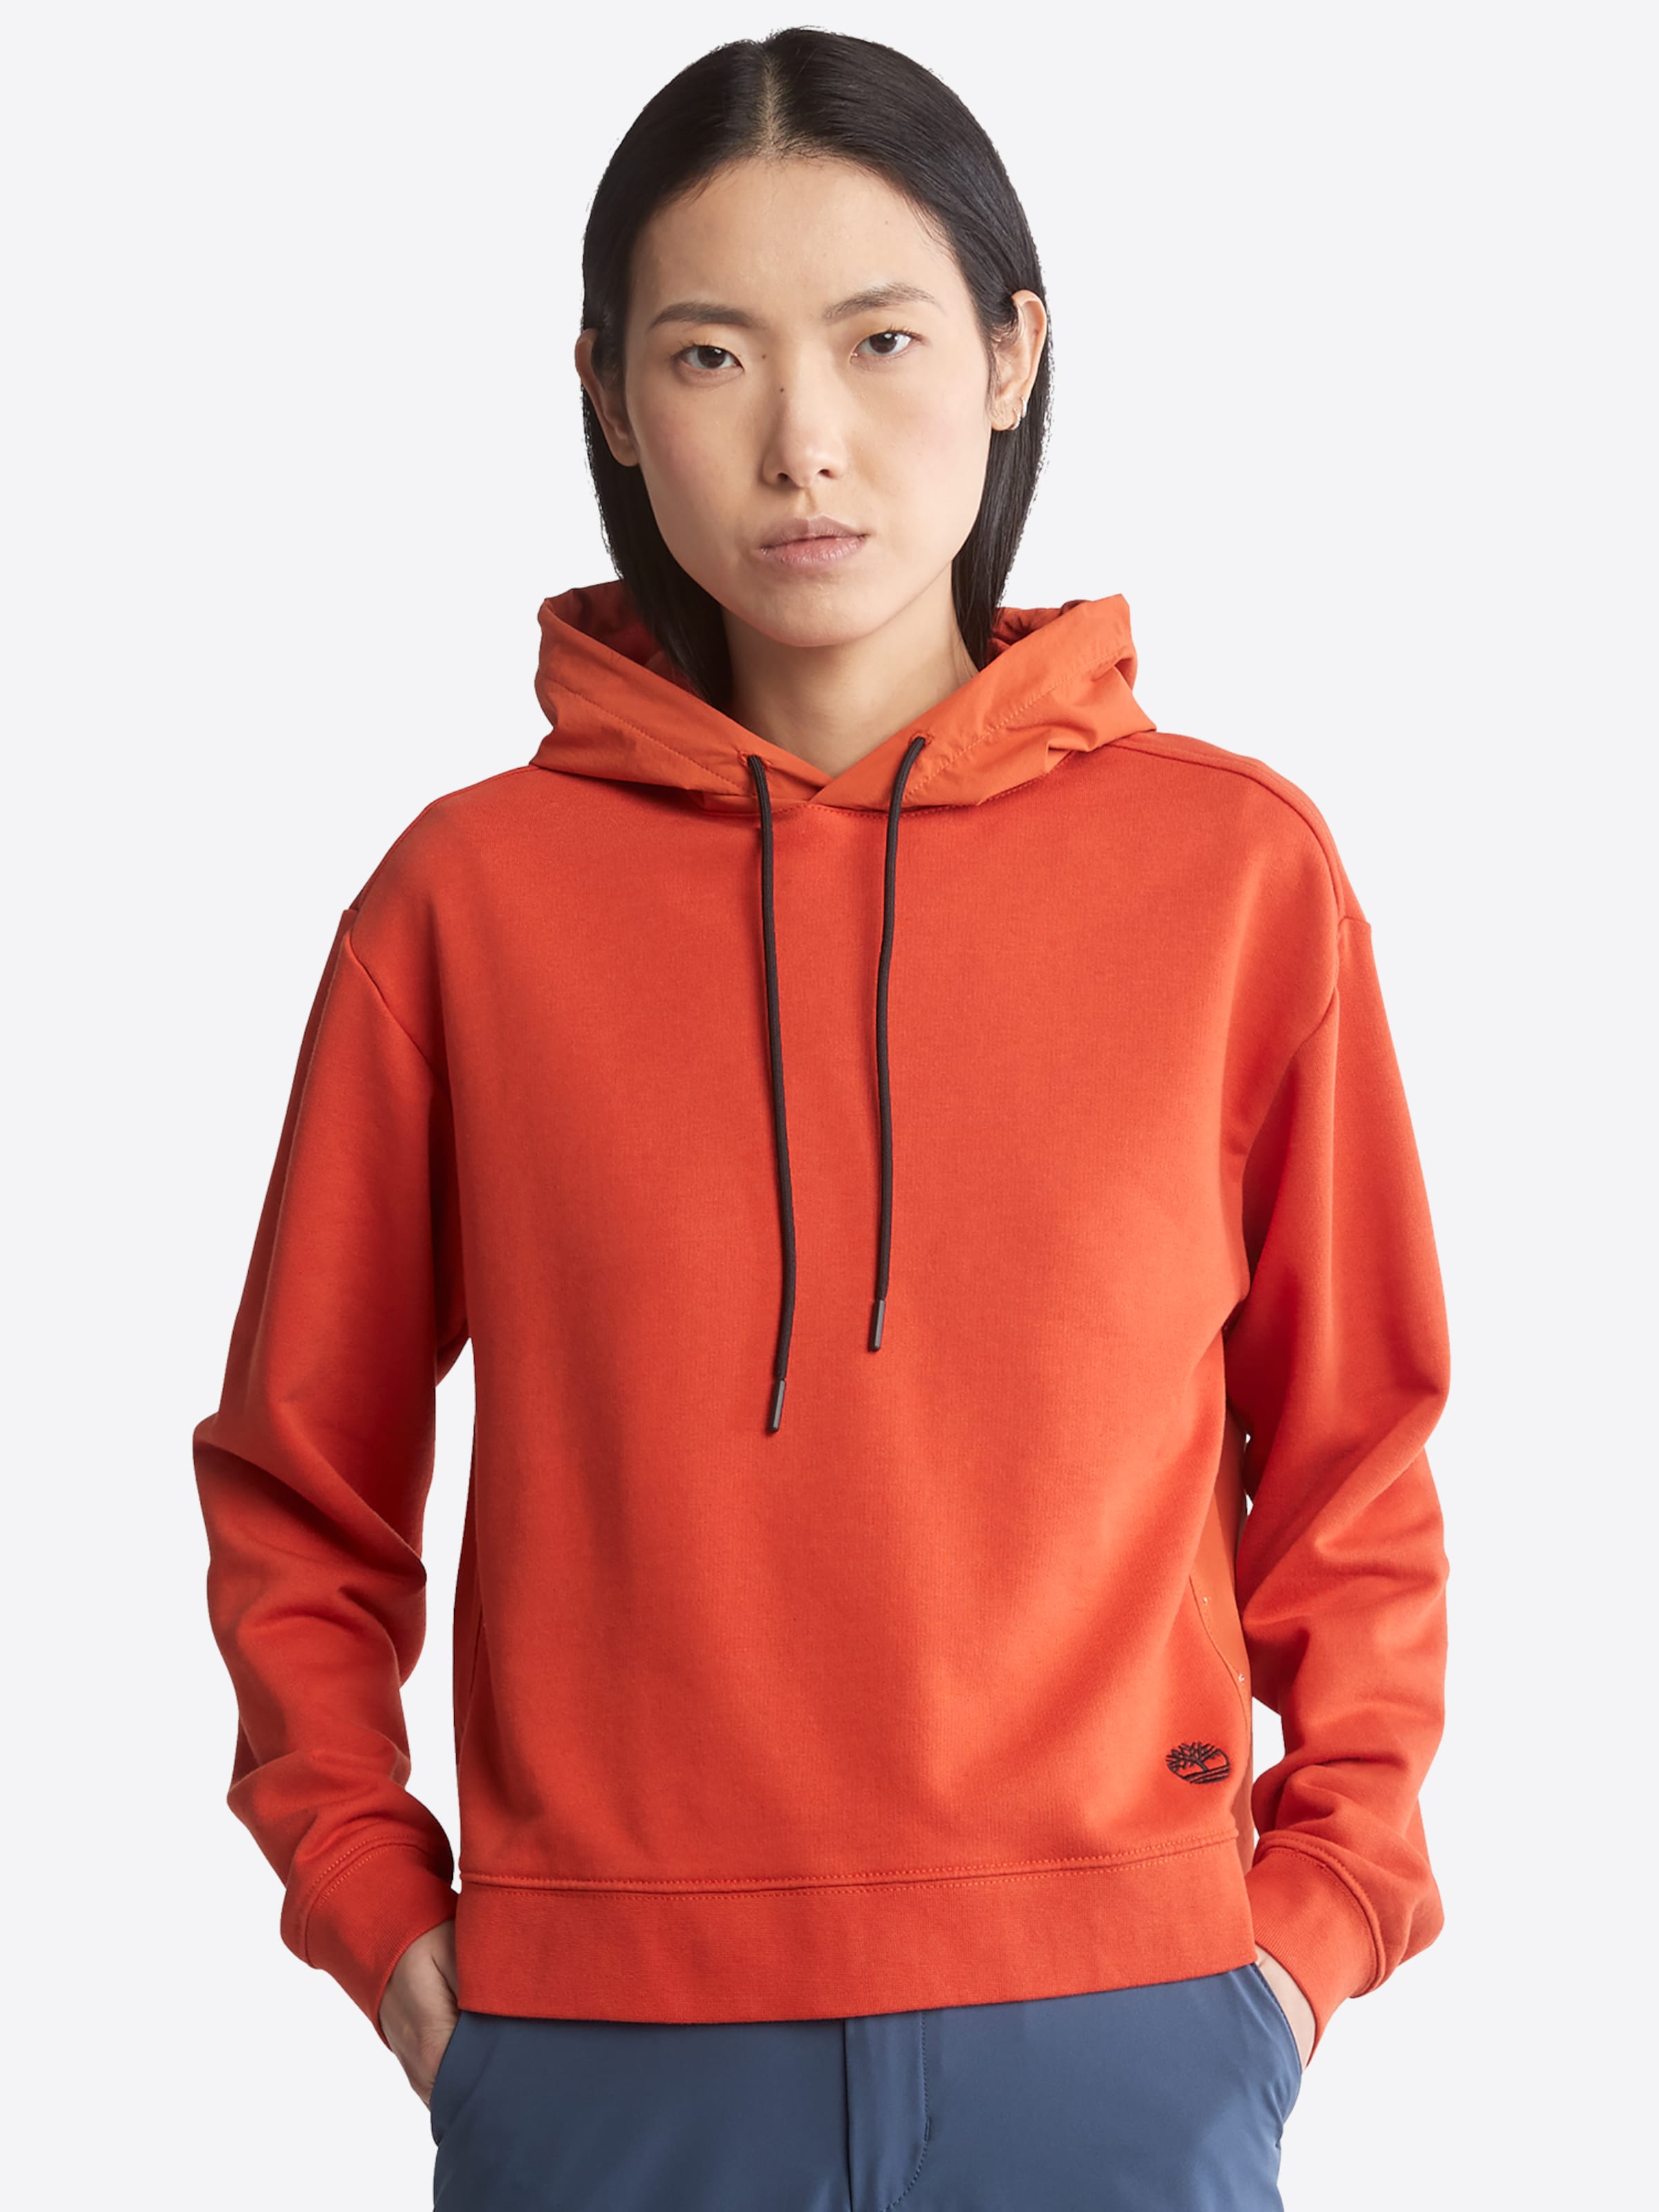 Rabatt 71 % DAMEN Pullovers & Sweatshirts Hoodie Ecoalf sweatshirt Orange XS 